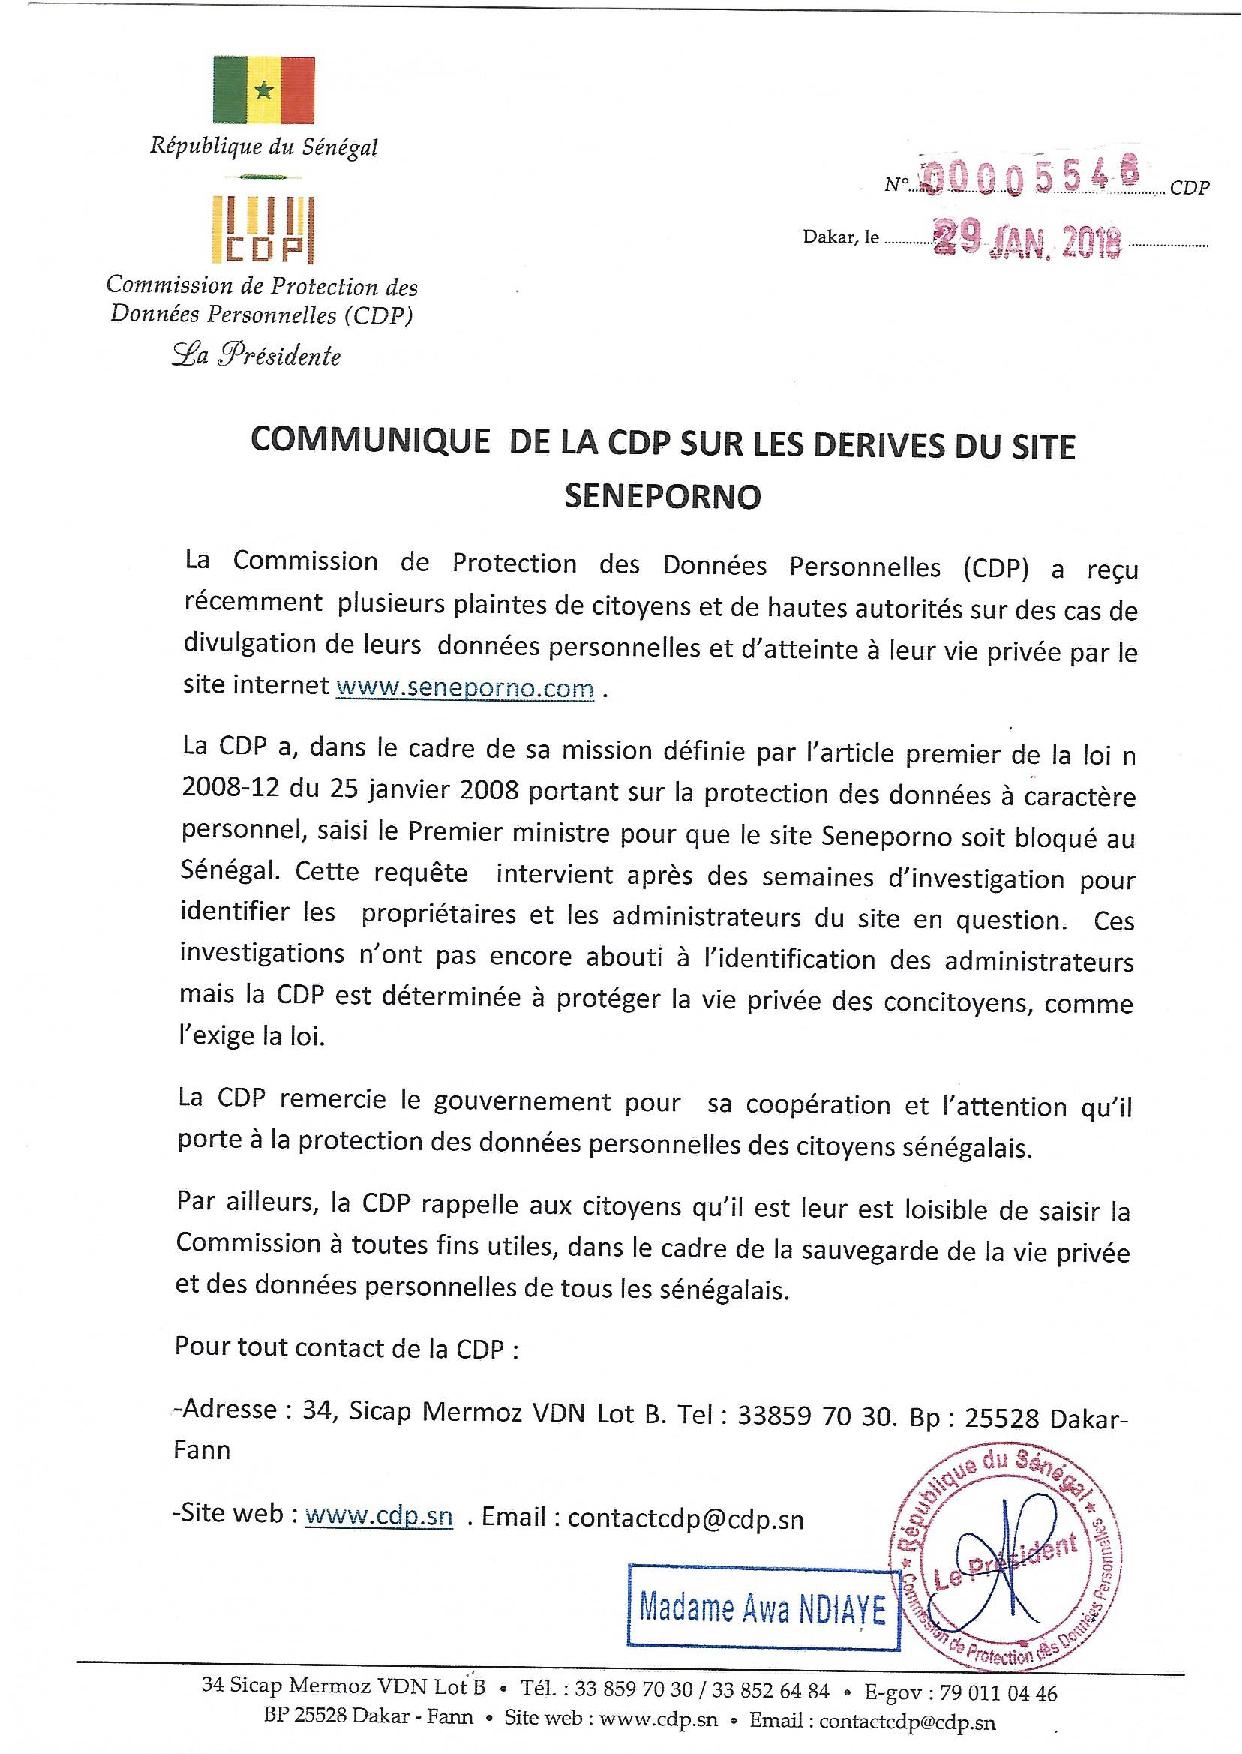 Awa Ndiaye et le CDP saisissent le Gouvernement pour que le site SENXXXX soit bloqué au Sénégal